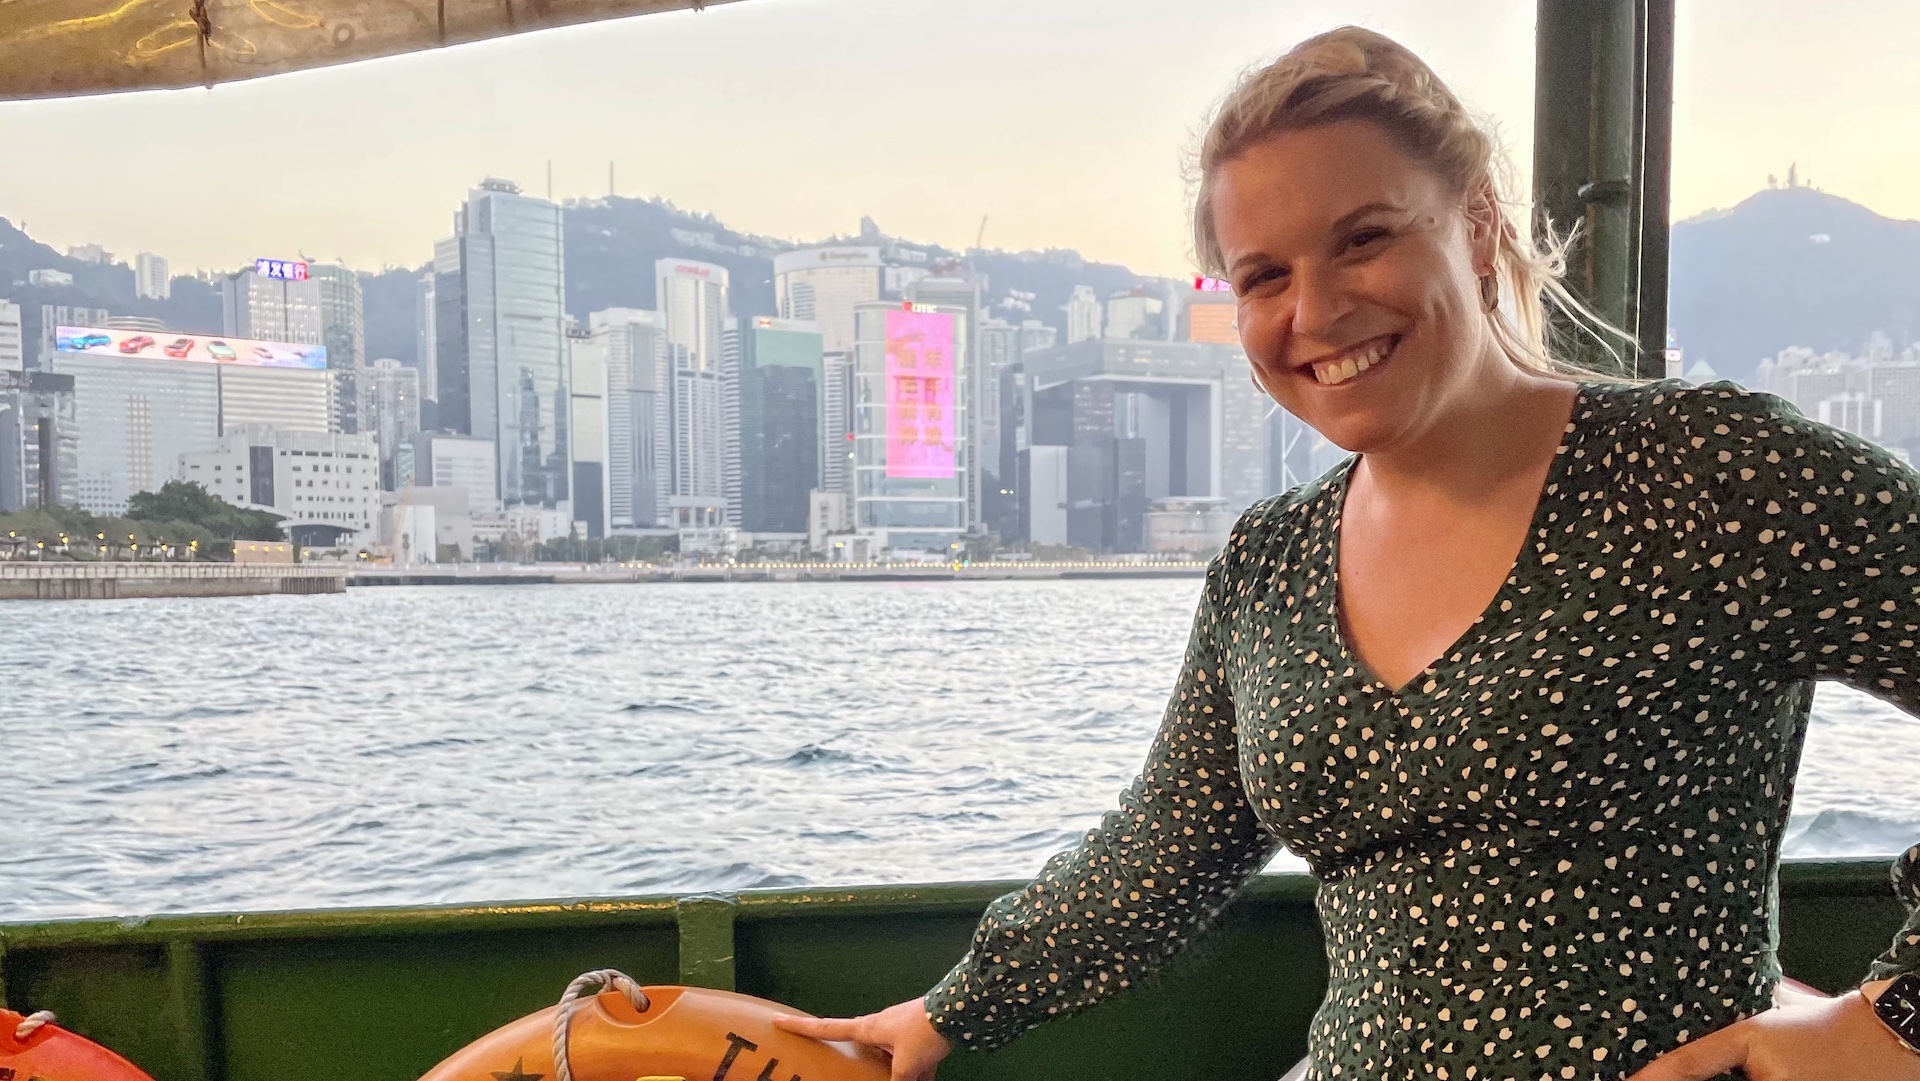 Spotlight on Hong Kong’s Star Ferry